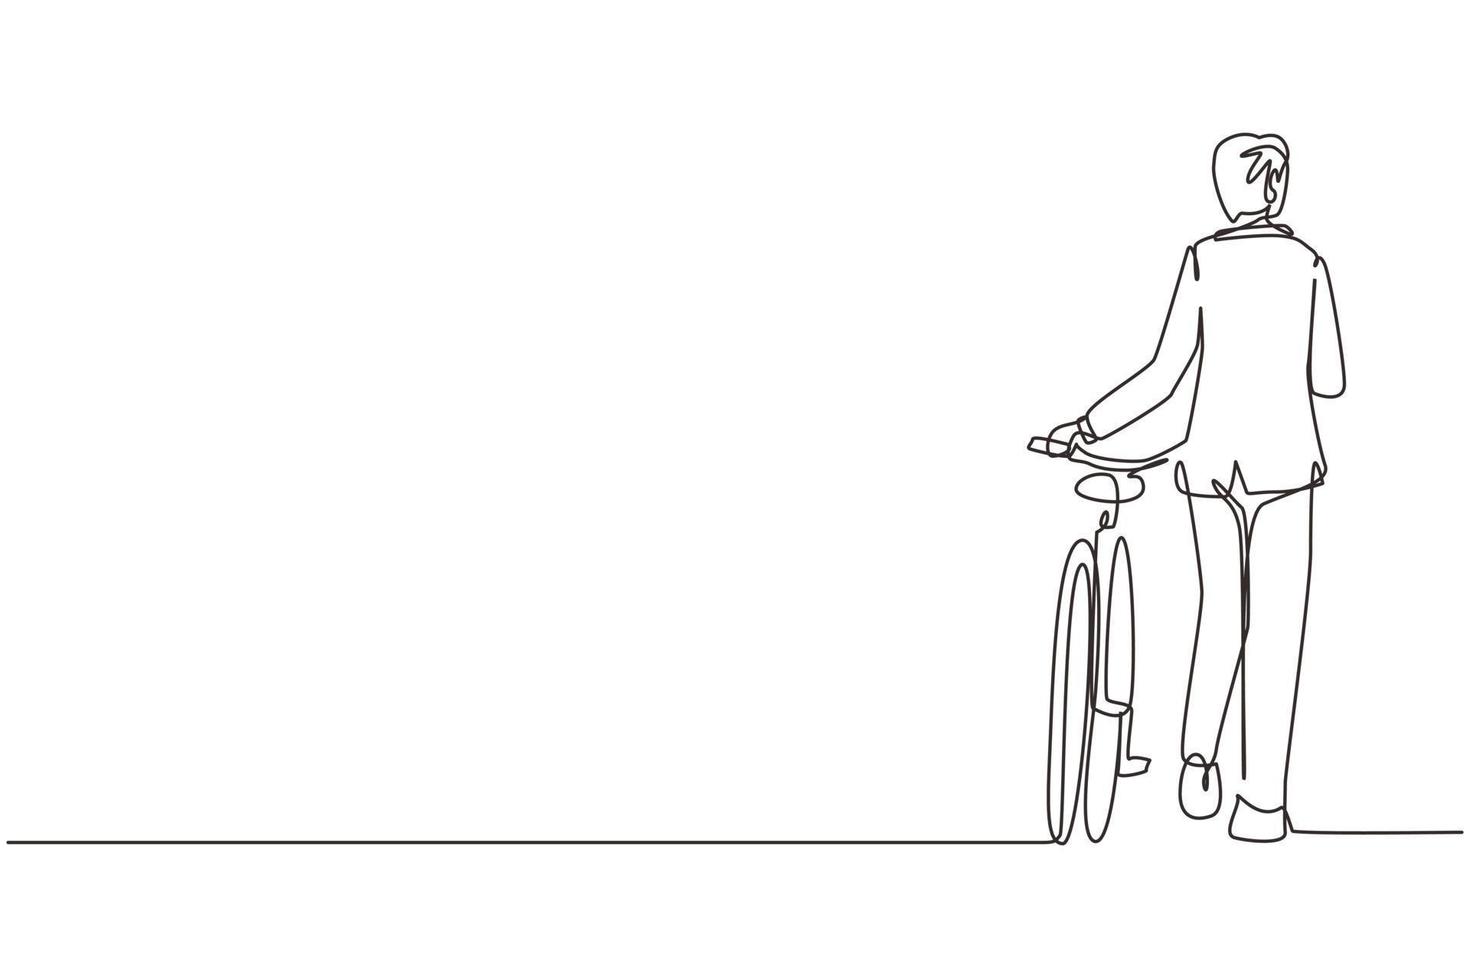 enkele doorlopende lijntekening achteraanzicht wandelende jonge man draagt pak met fiets. man maak een wandeling met de fiets op de stadsweg. gezonde levensstijl van stedelijke mensen. een lijn tekenen grafisch ontwerp vector